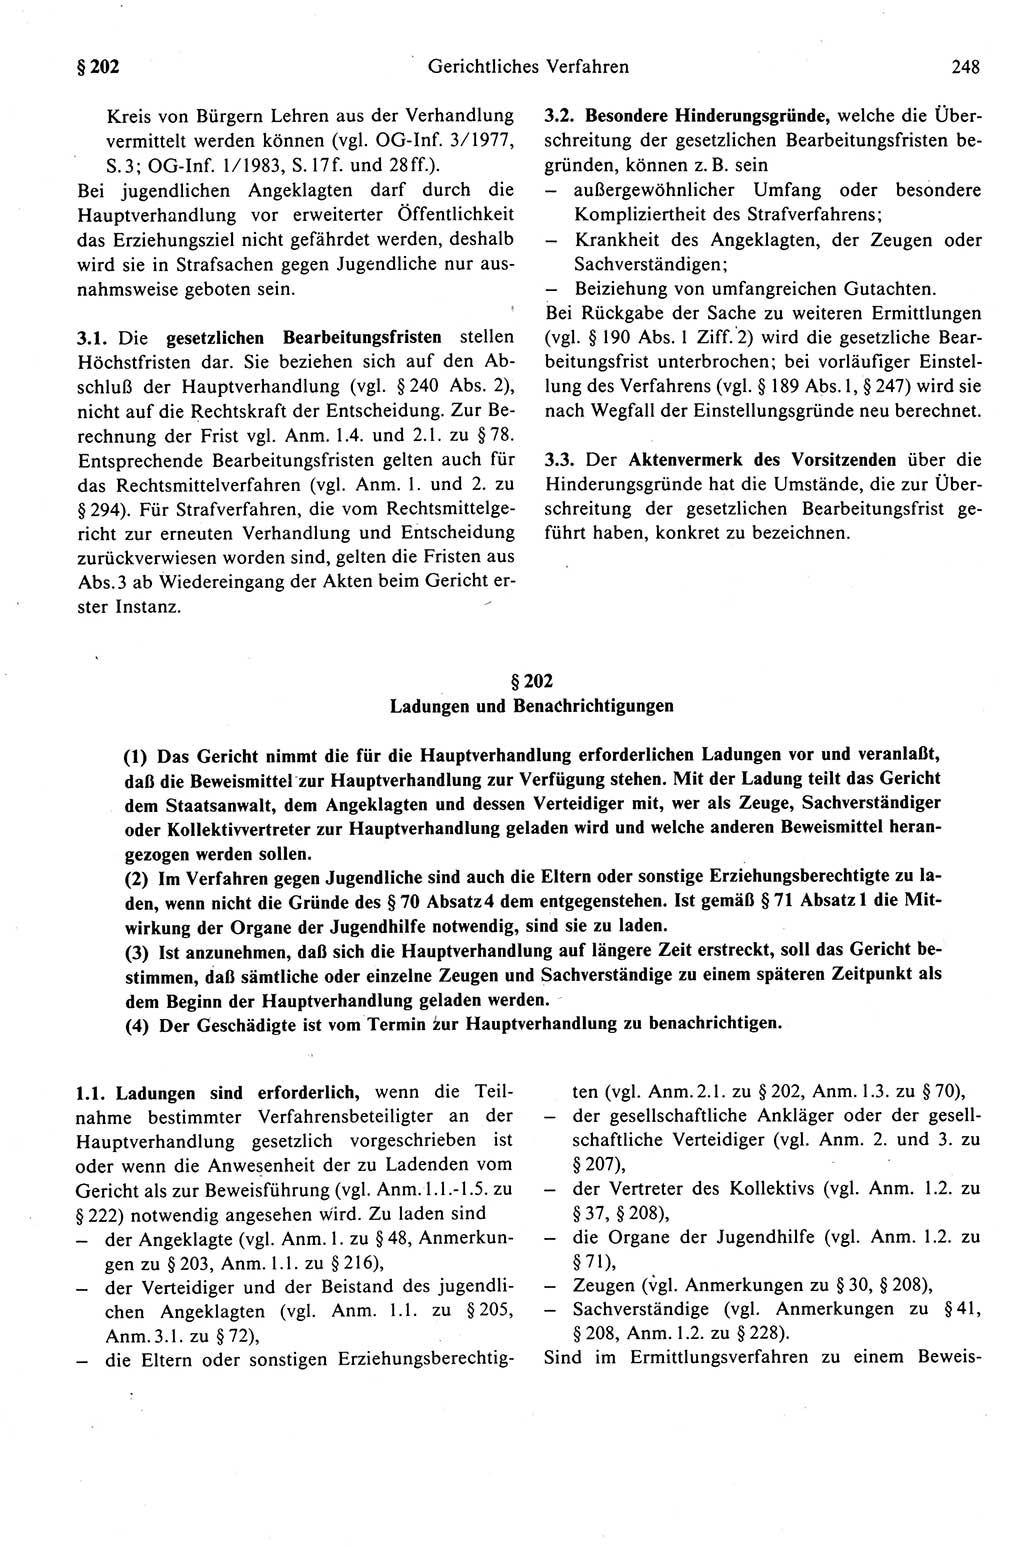 Strafprozeßrecht der DDR (Deutsche Demokratische Republik), Kommentar zur Strafprozeßordnung (StPO) 1989, Seite 248 (Strafprozeßr. DDR Komm. StPO 1989, S. 248)